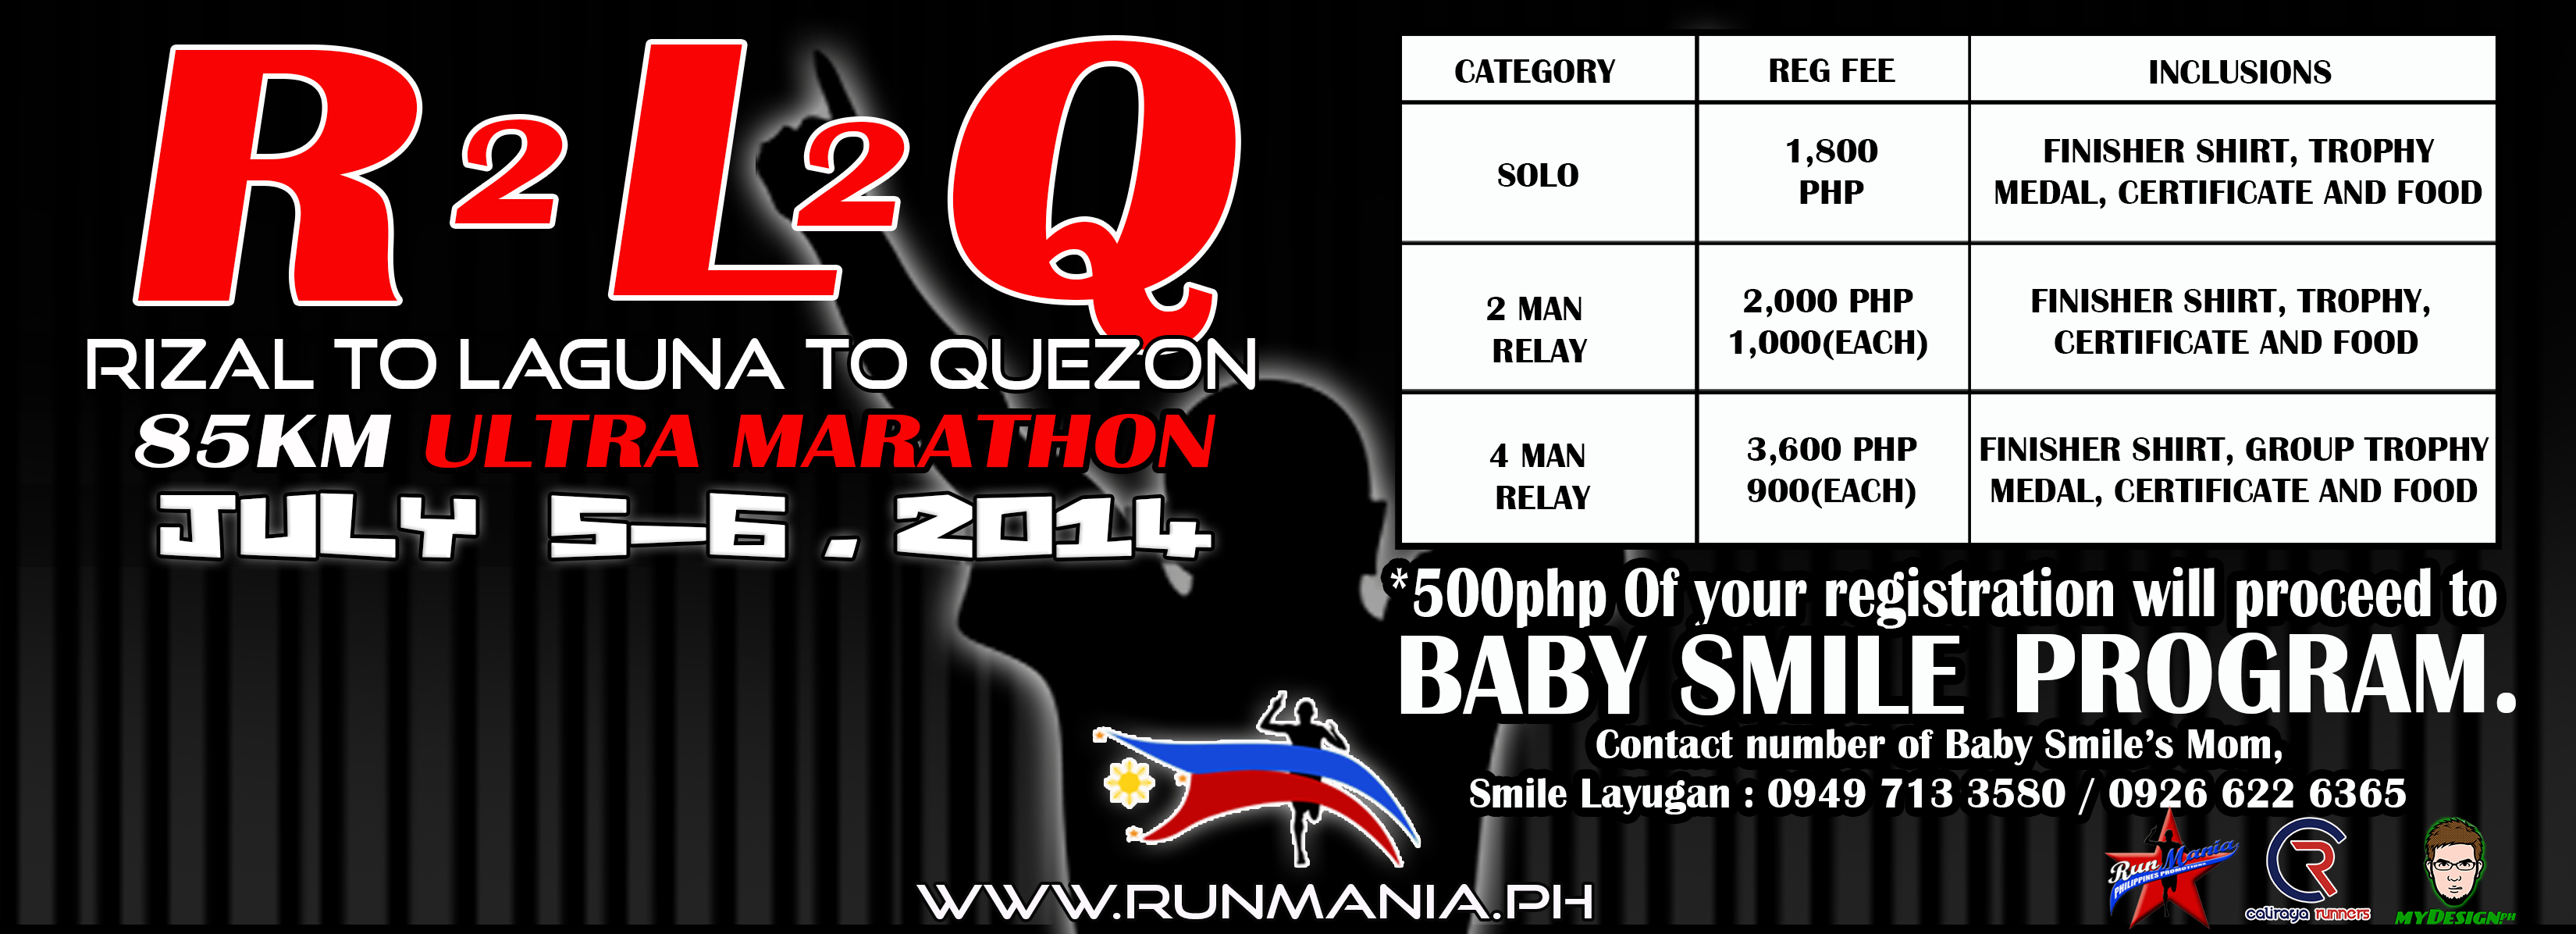 rizal-to-laguna-to-quezon-85K-ultramarathon-2014-poster